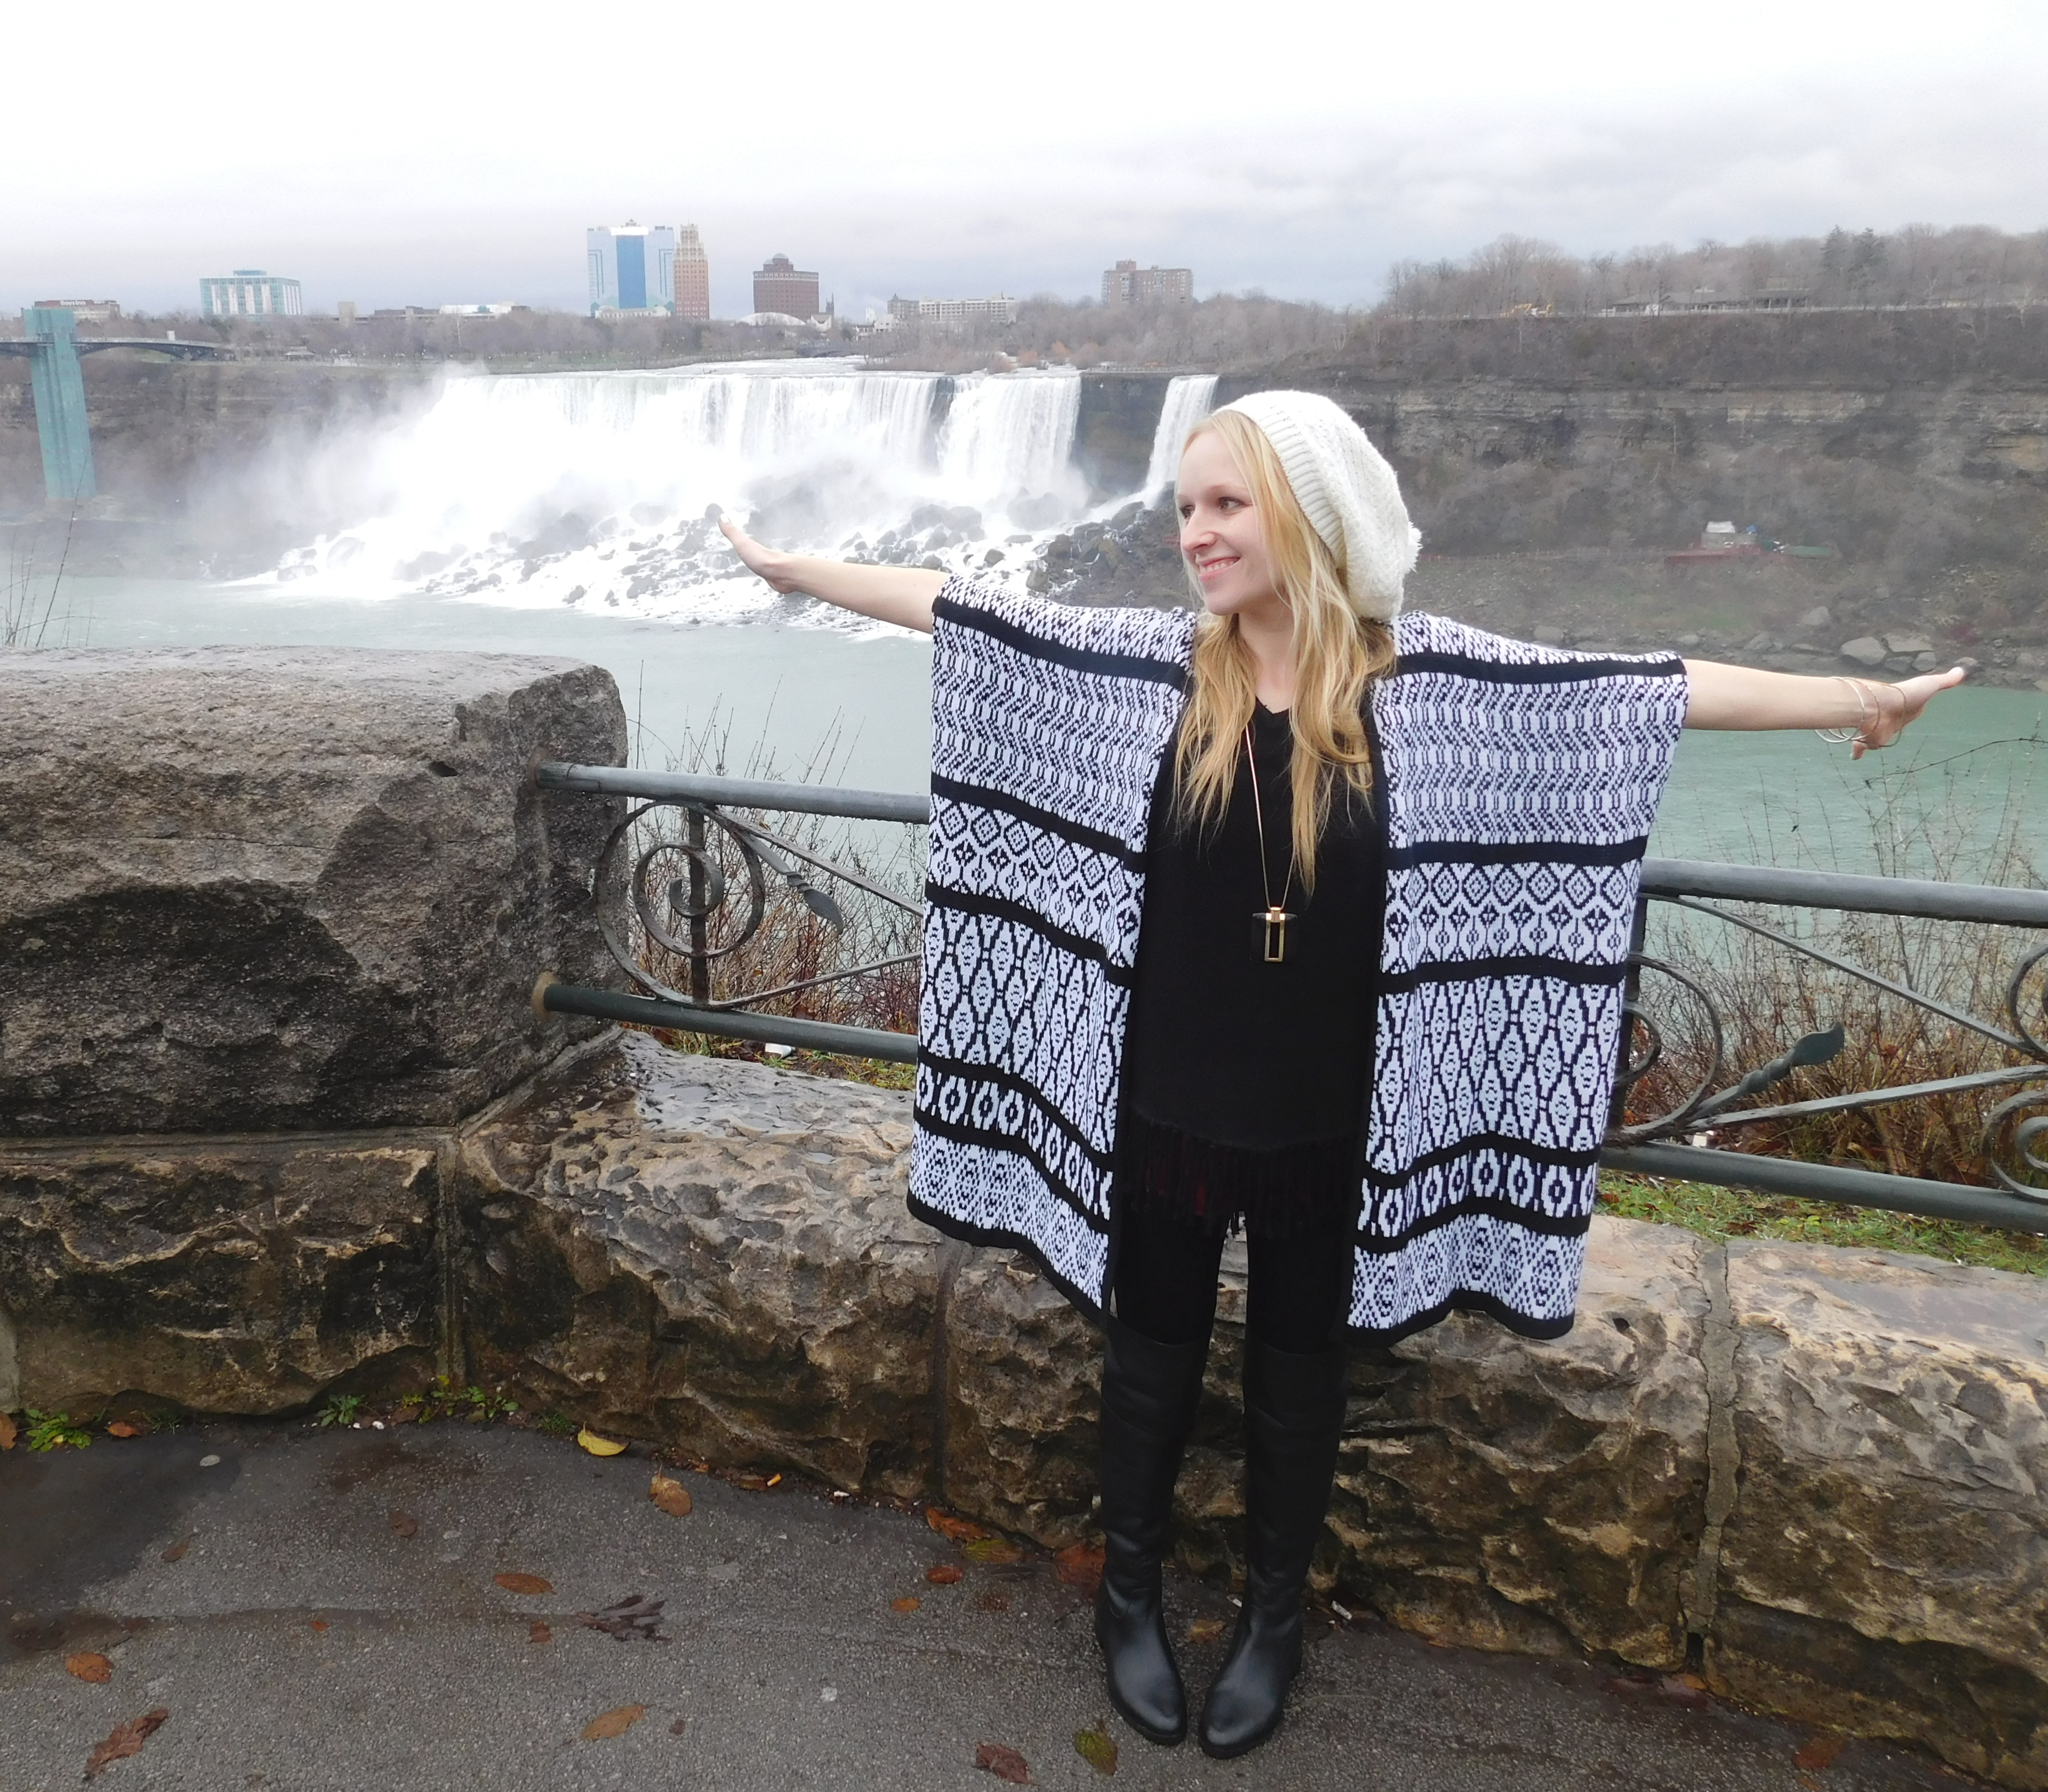  Niagara Falls Clothing - Ontario Canada - Niagara